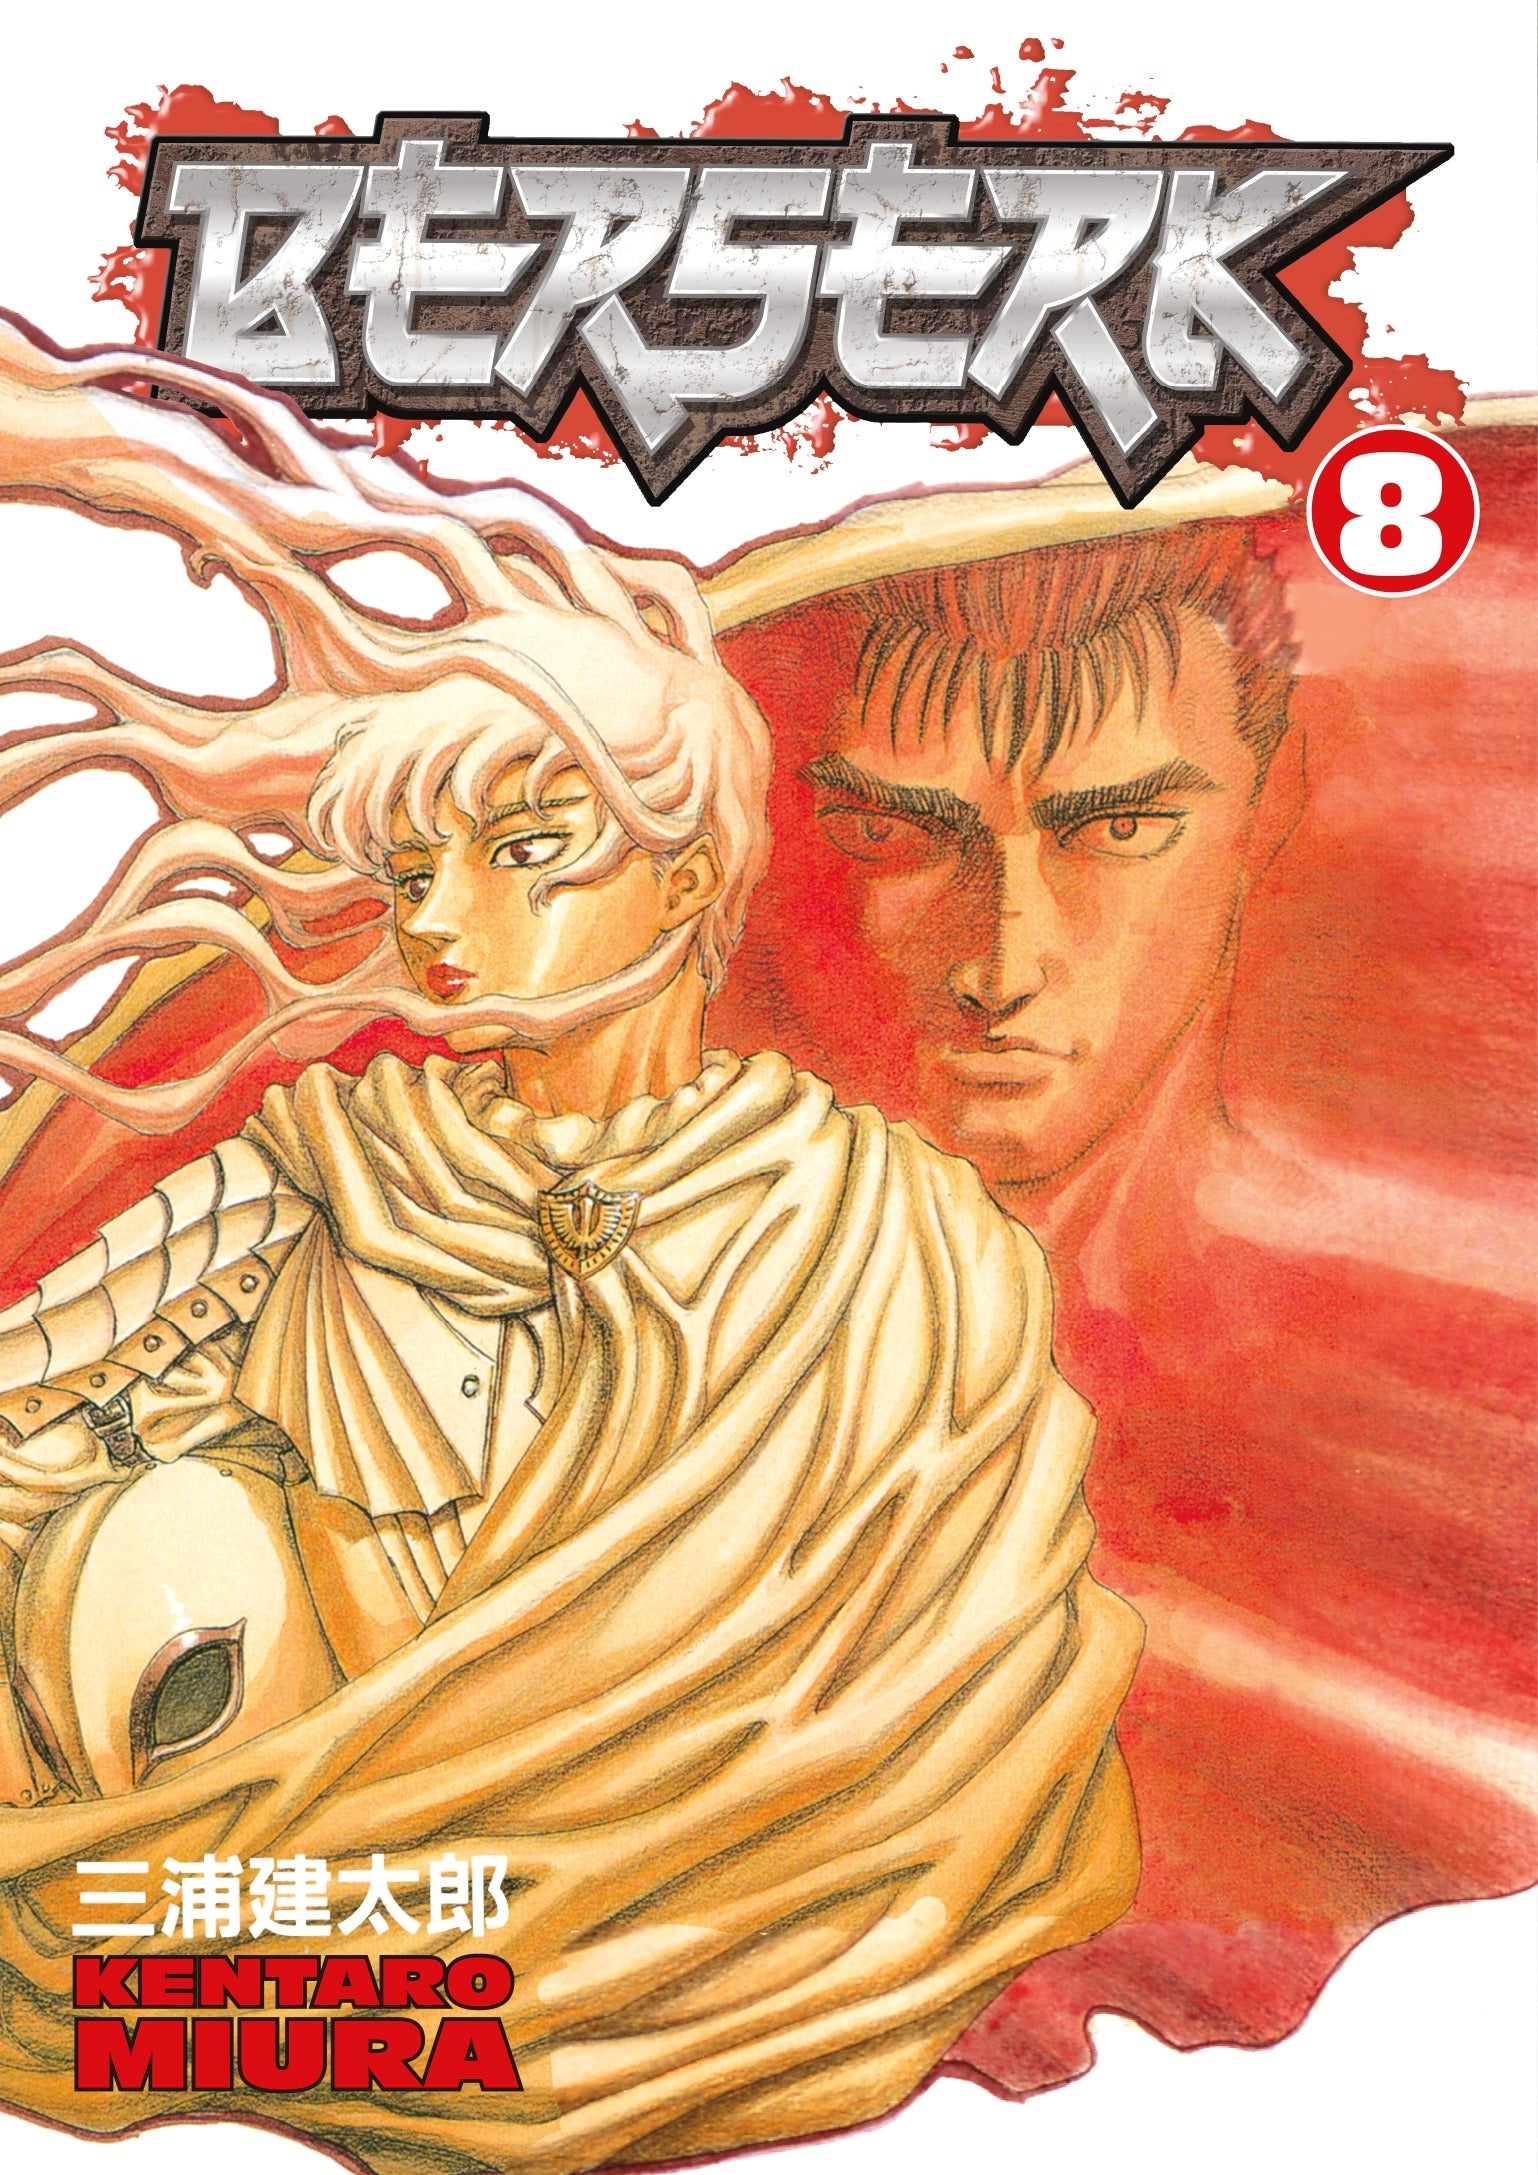 Berserk Vol. 8 (Manga)